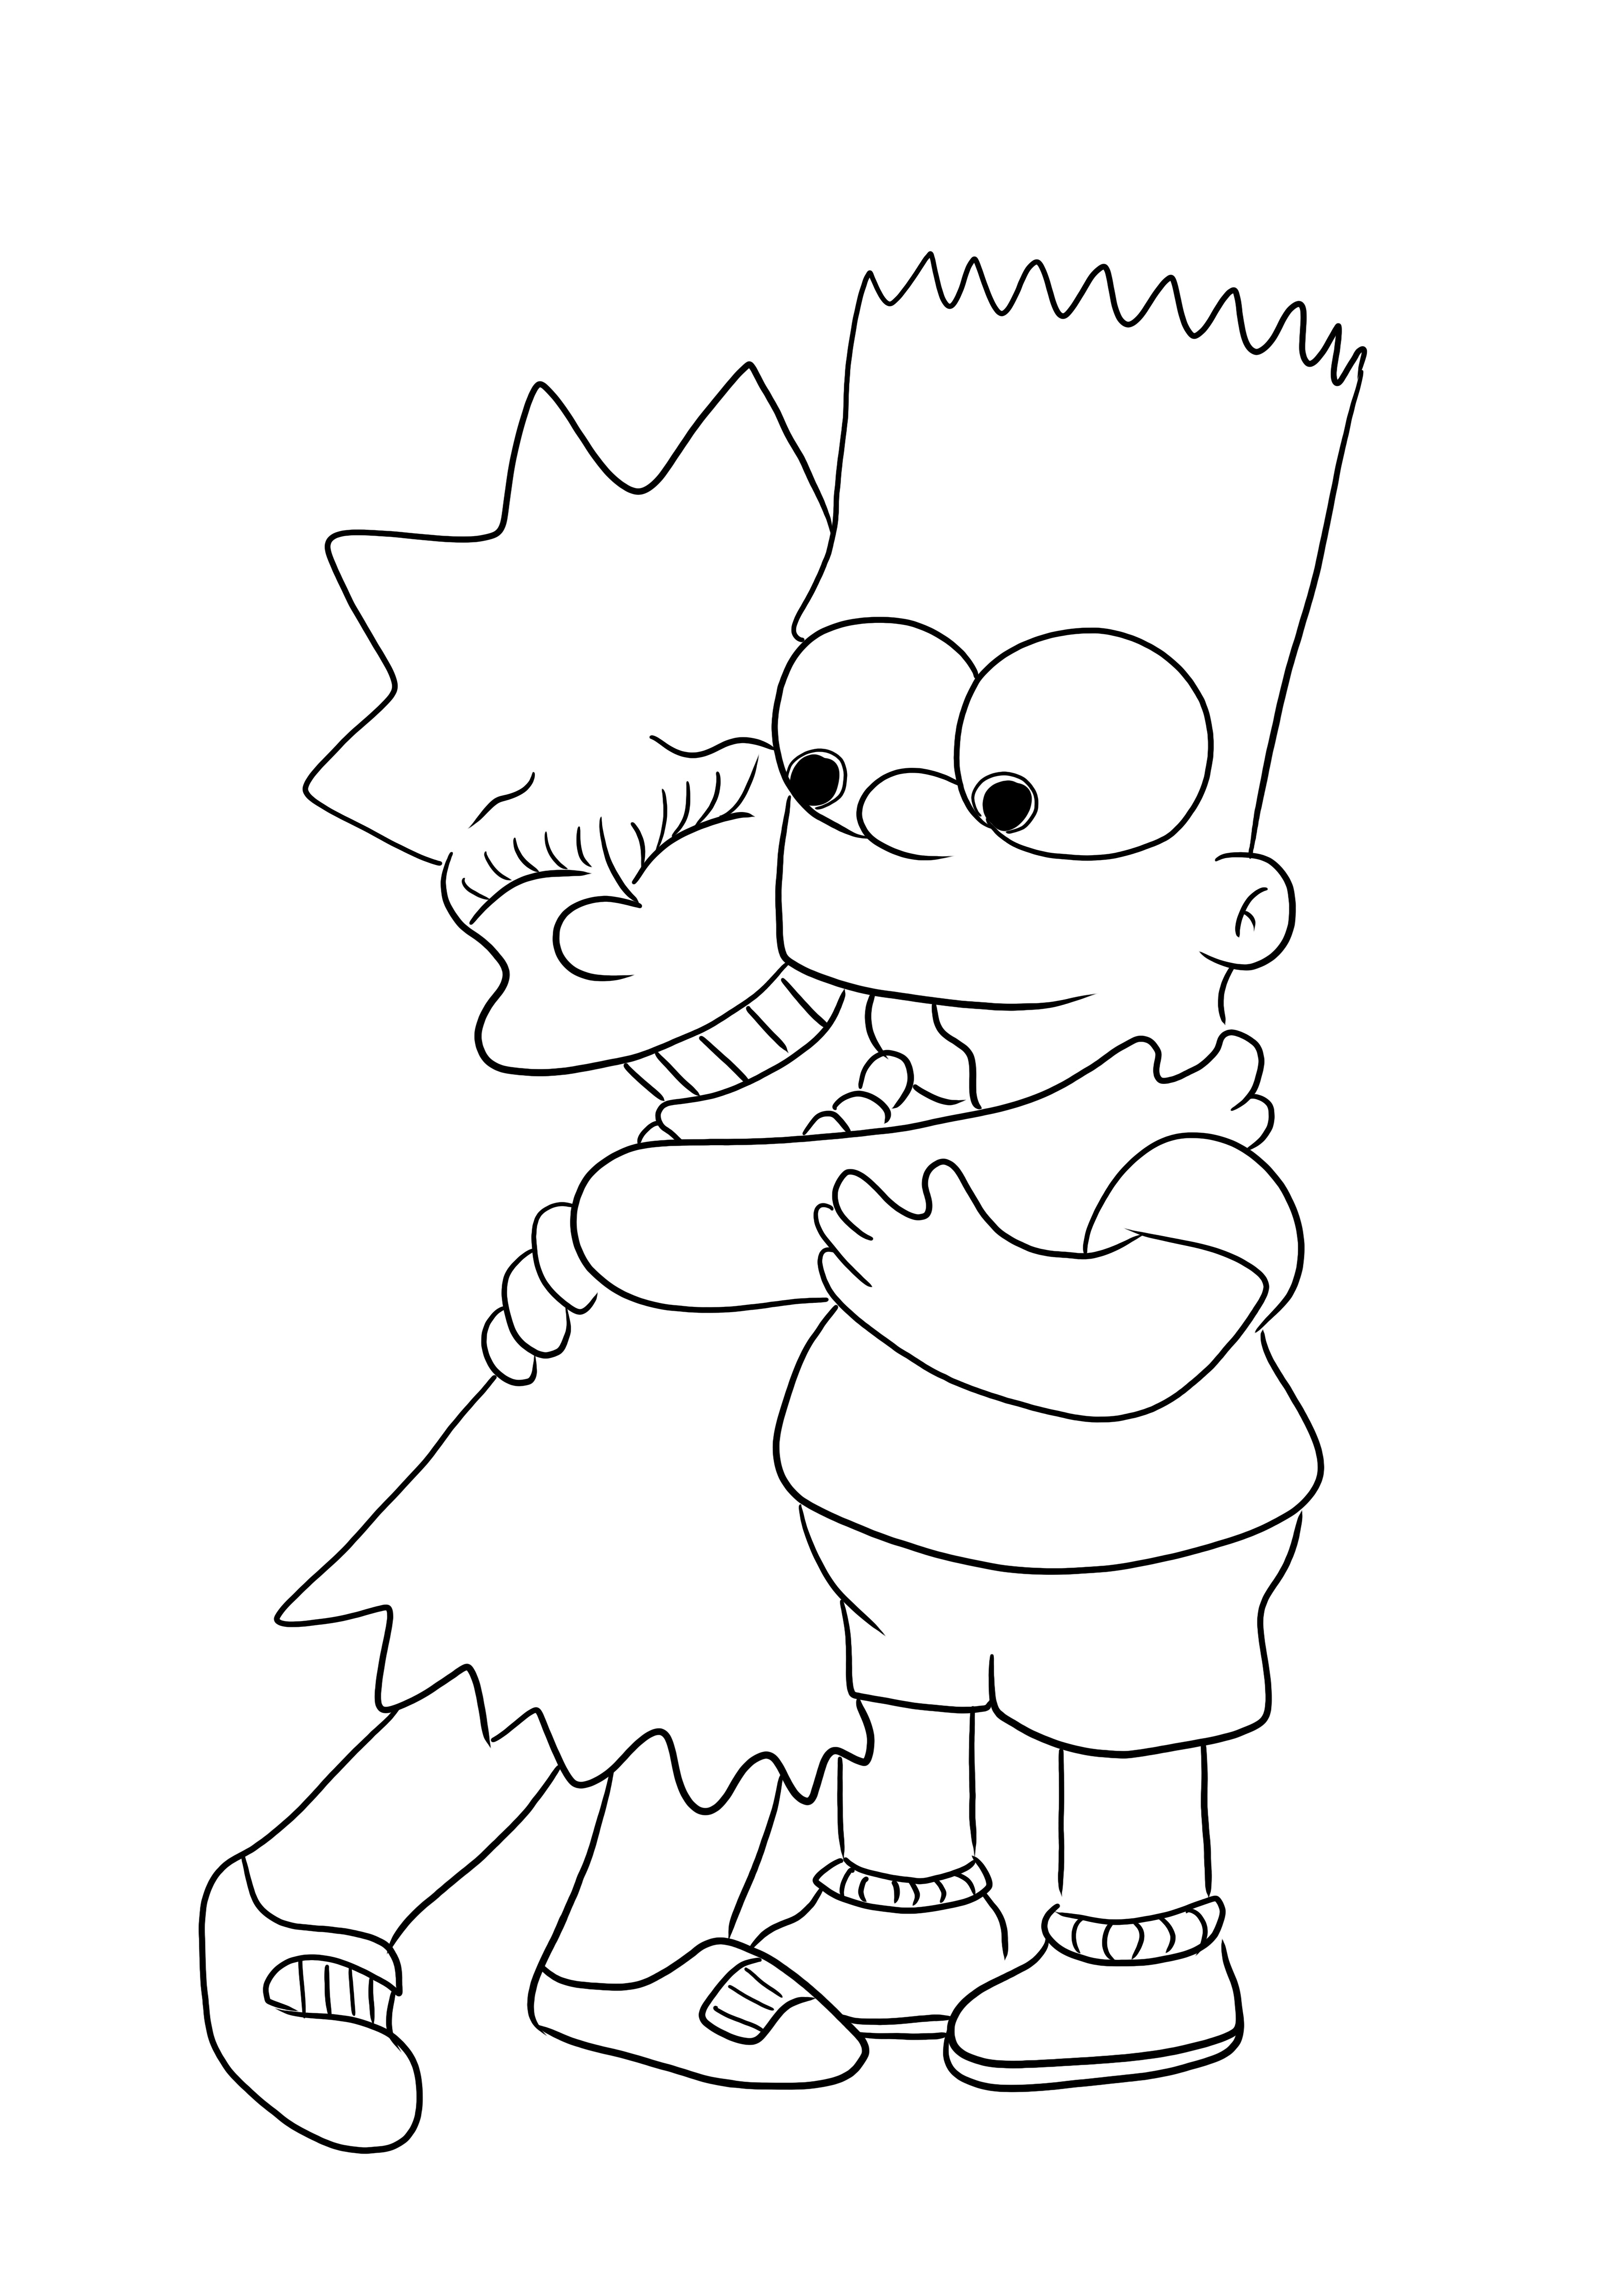 Een gratis kleurplaat van Bart en Lisa uit de familie Simpsons om af te drukken voor kinderen kleurplaat